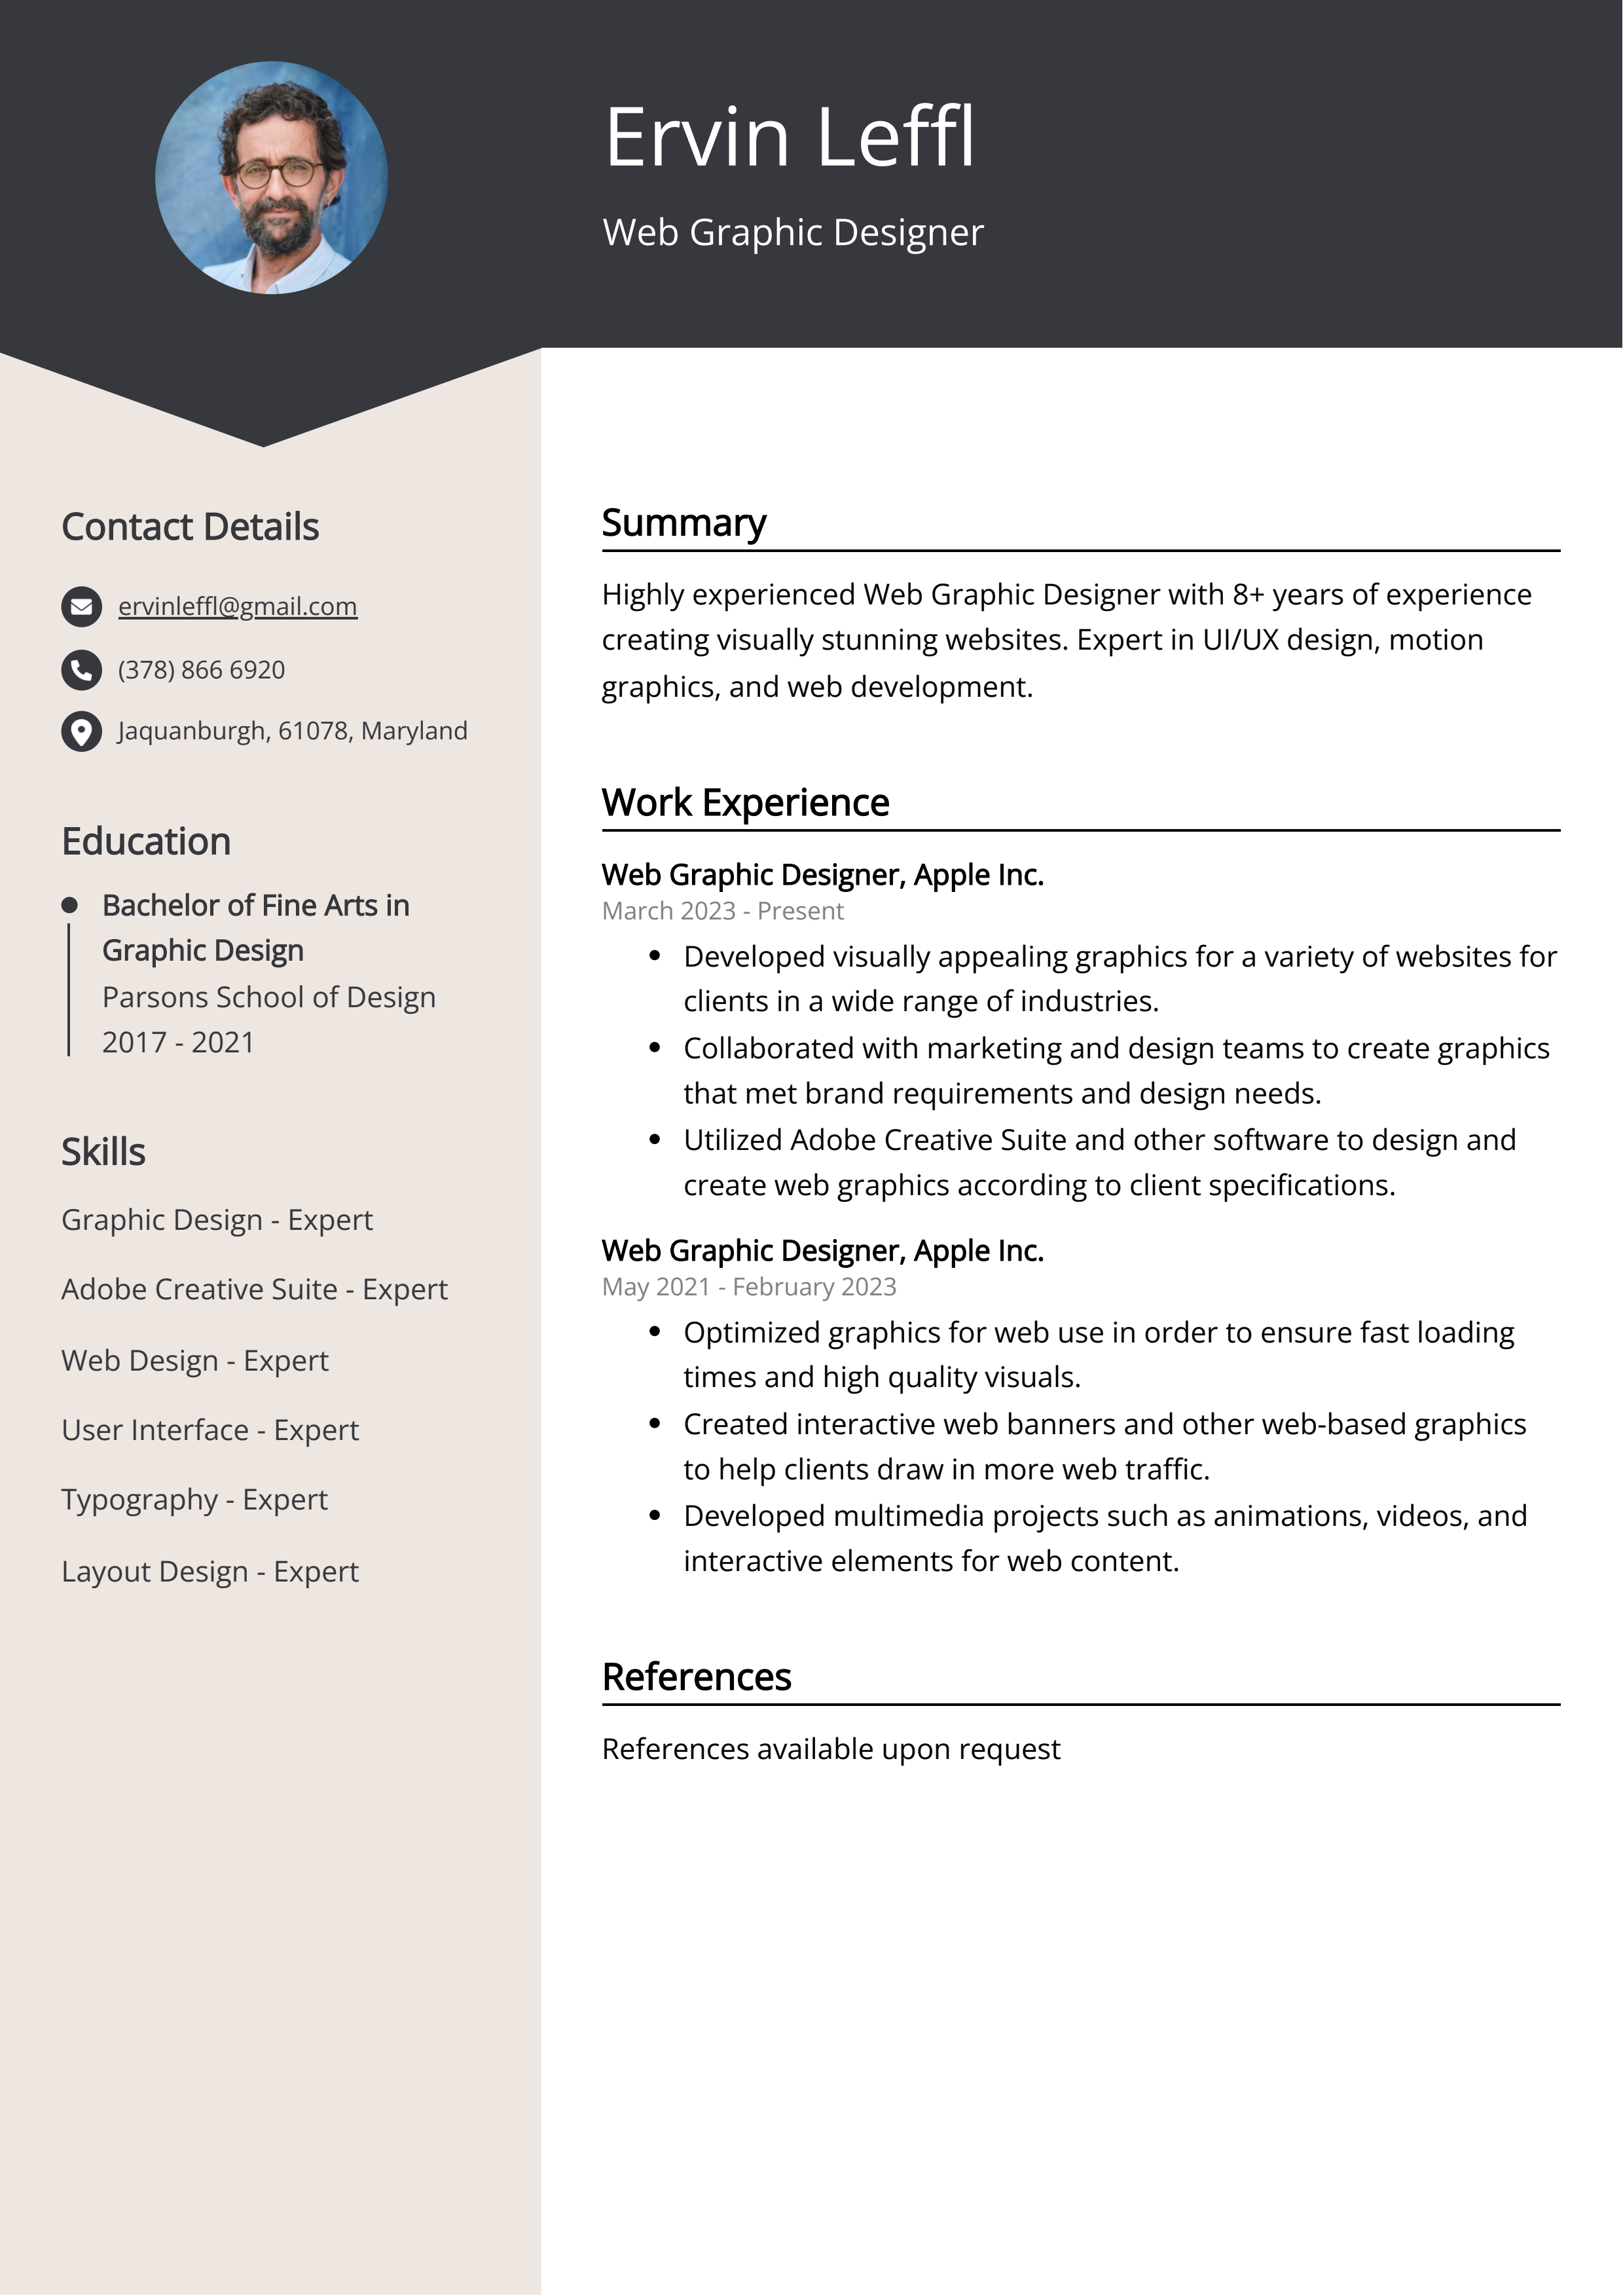 Web Graphic Designer CV Example